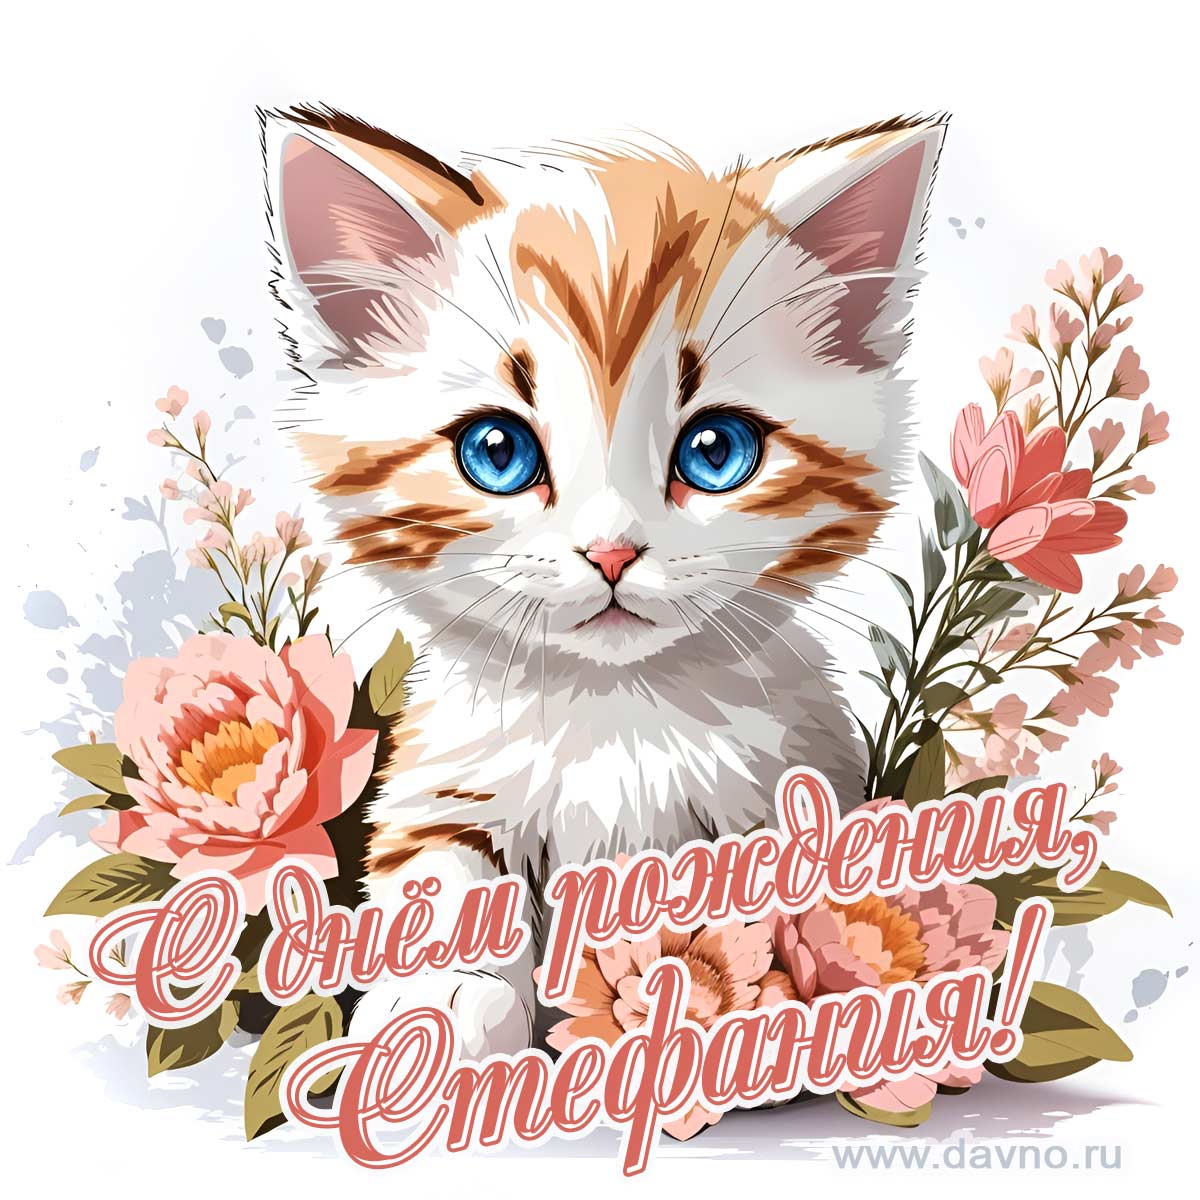 Новая рисованная поздравительная открытка для Стефании с котёнком